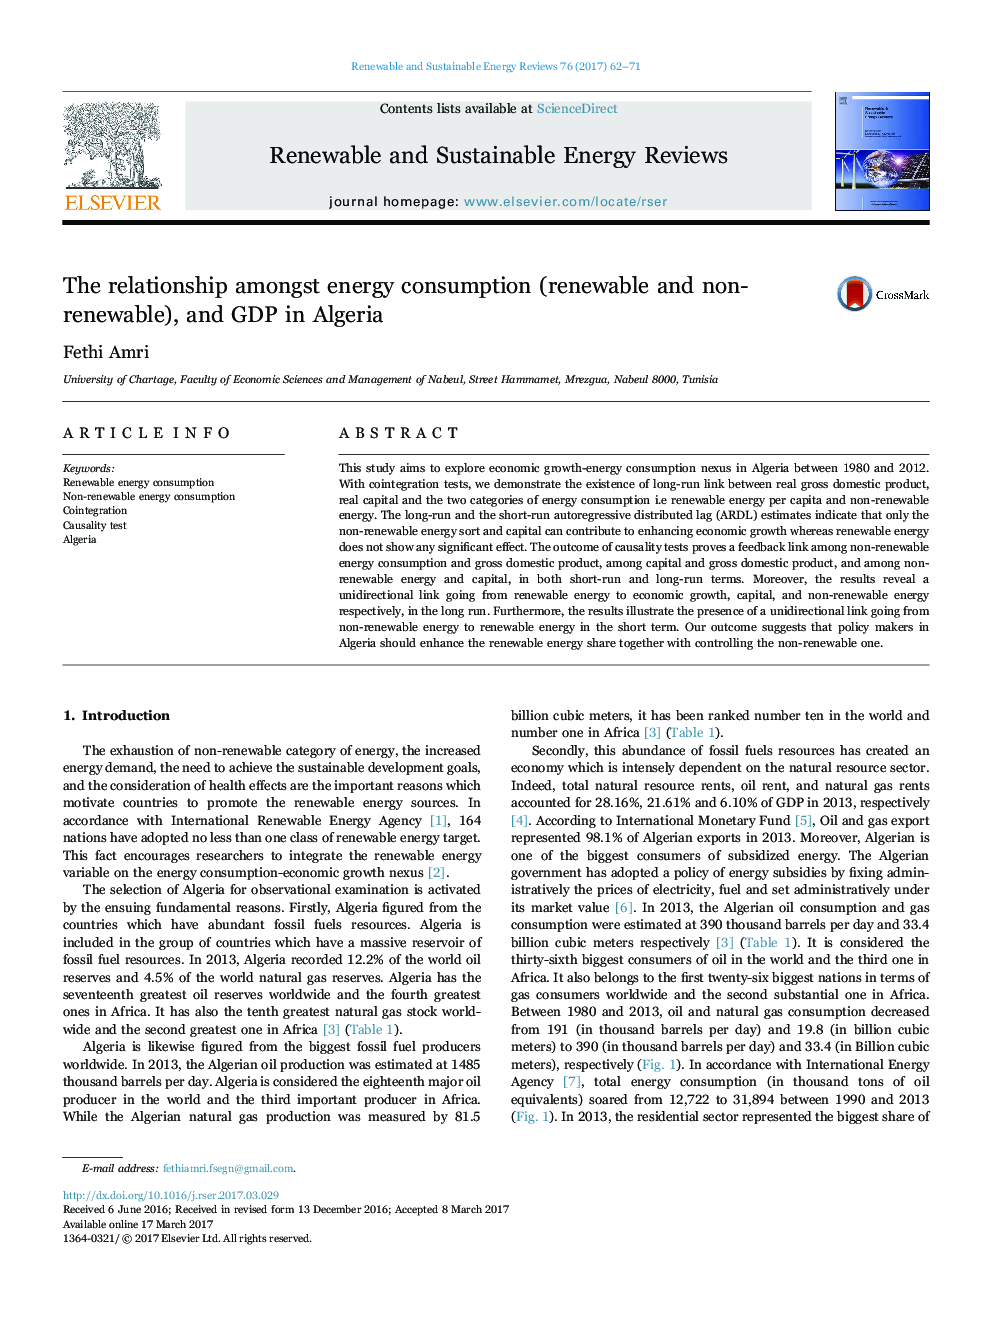 رابطه بین مصرف انرژی (تجدید پذیر و غیر قابل تجدید) و تولید ناخالص داخلی در الجزایر 